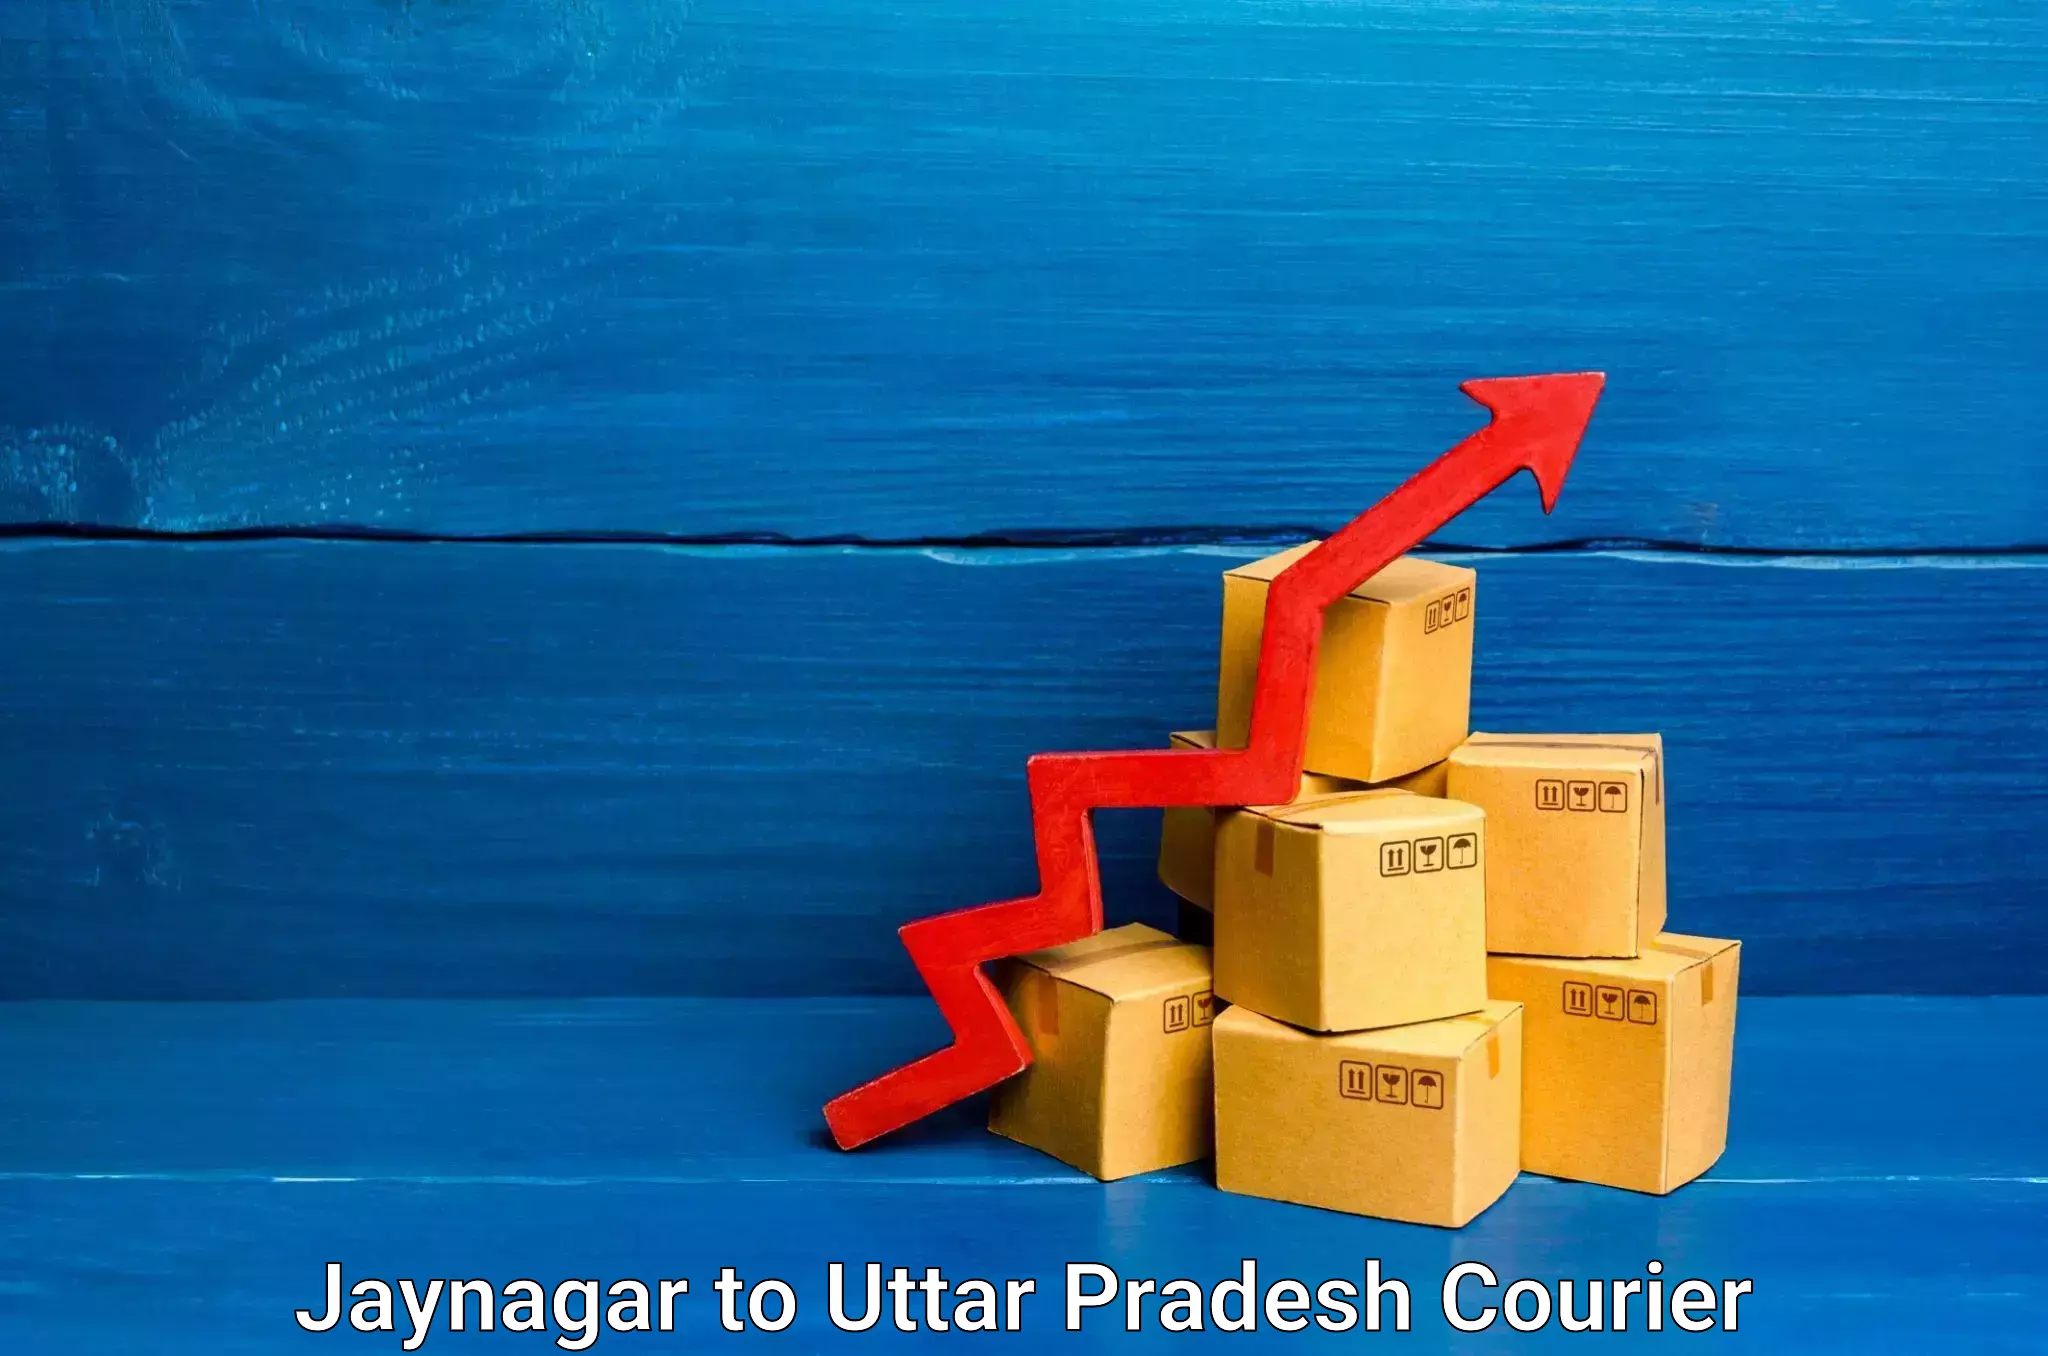 Furniture moving experts Jaynagar to Uttar Pradesh